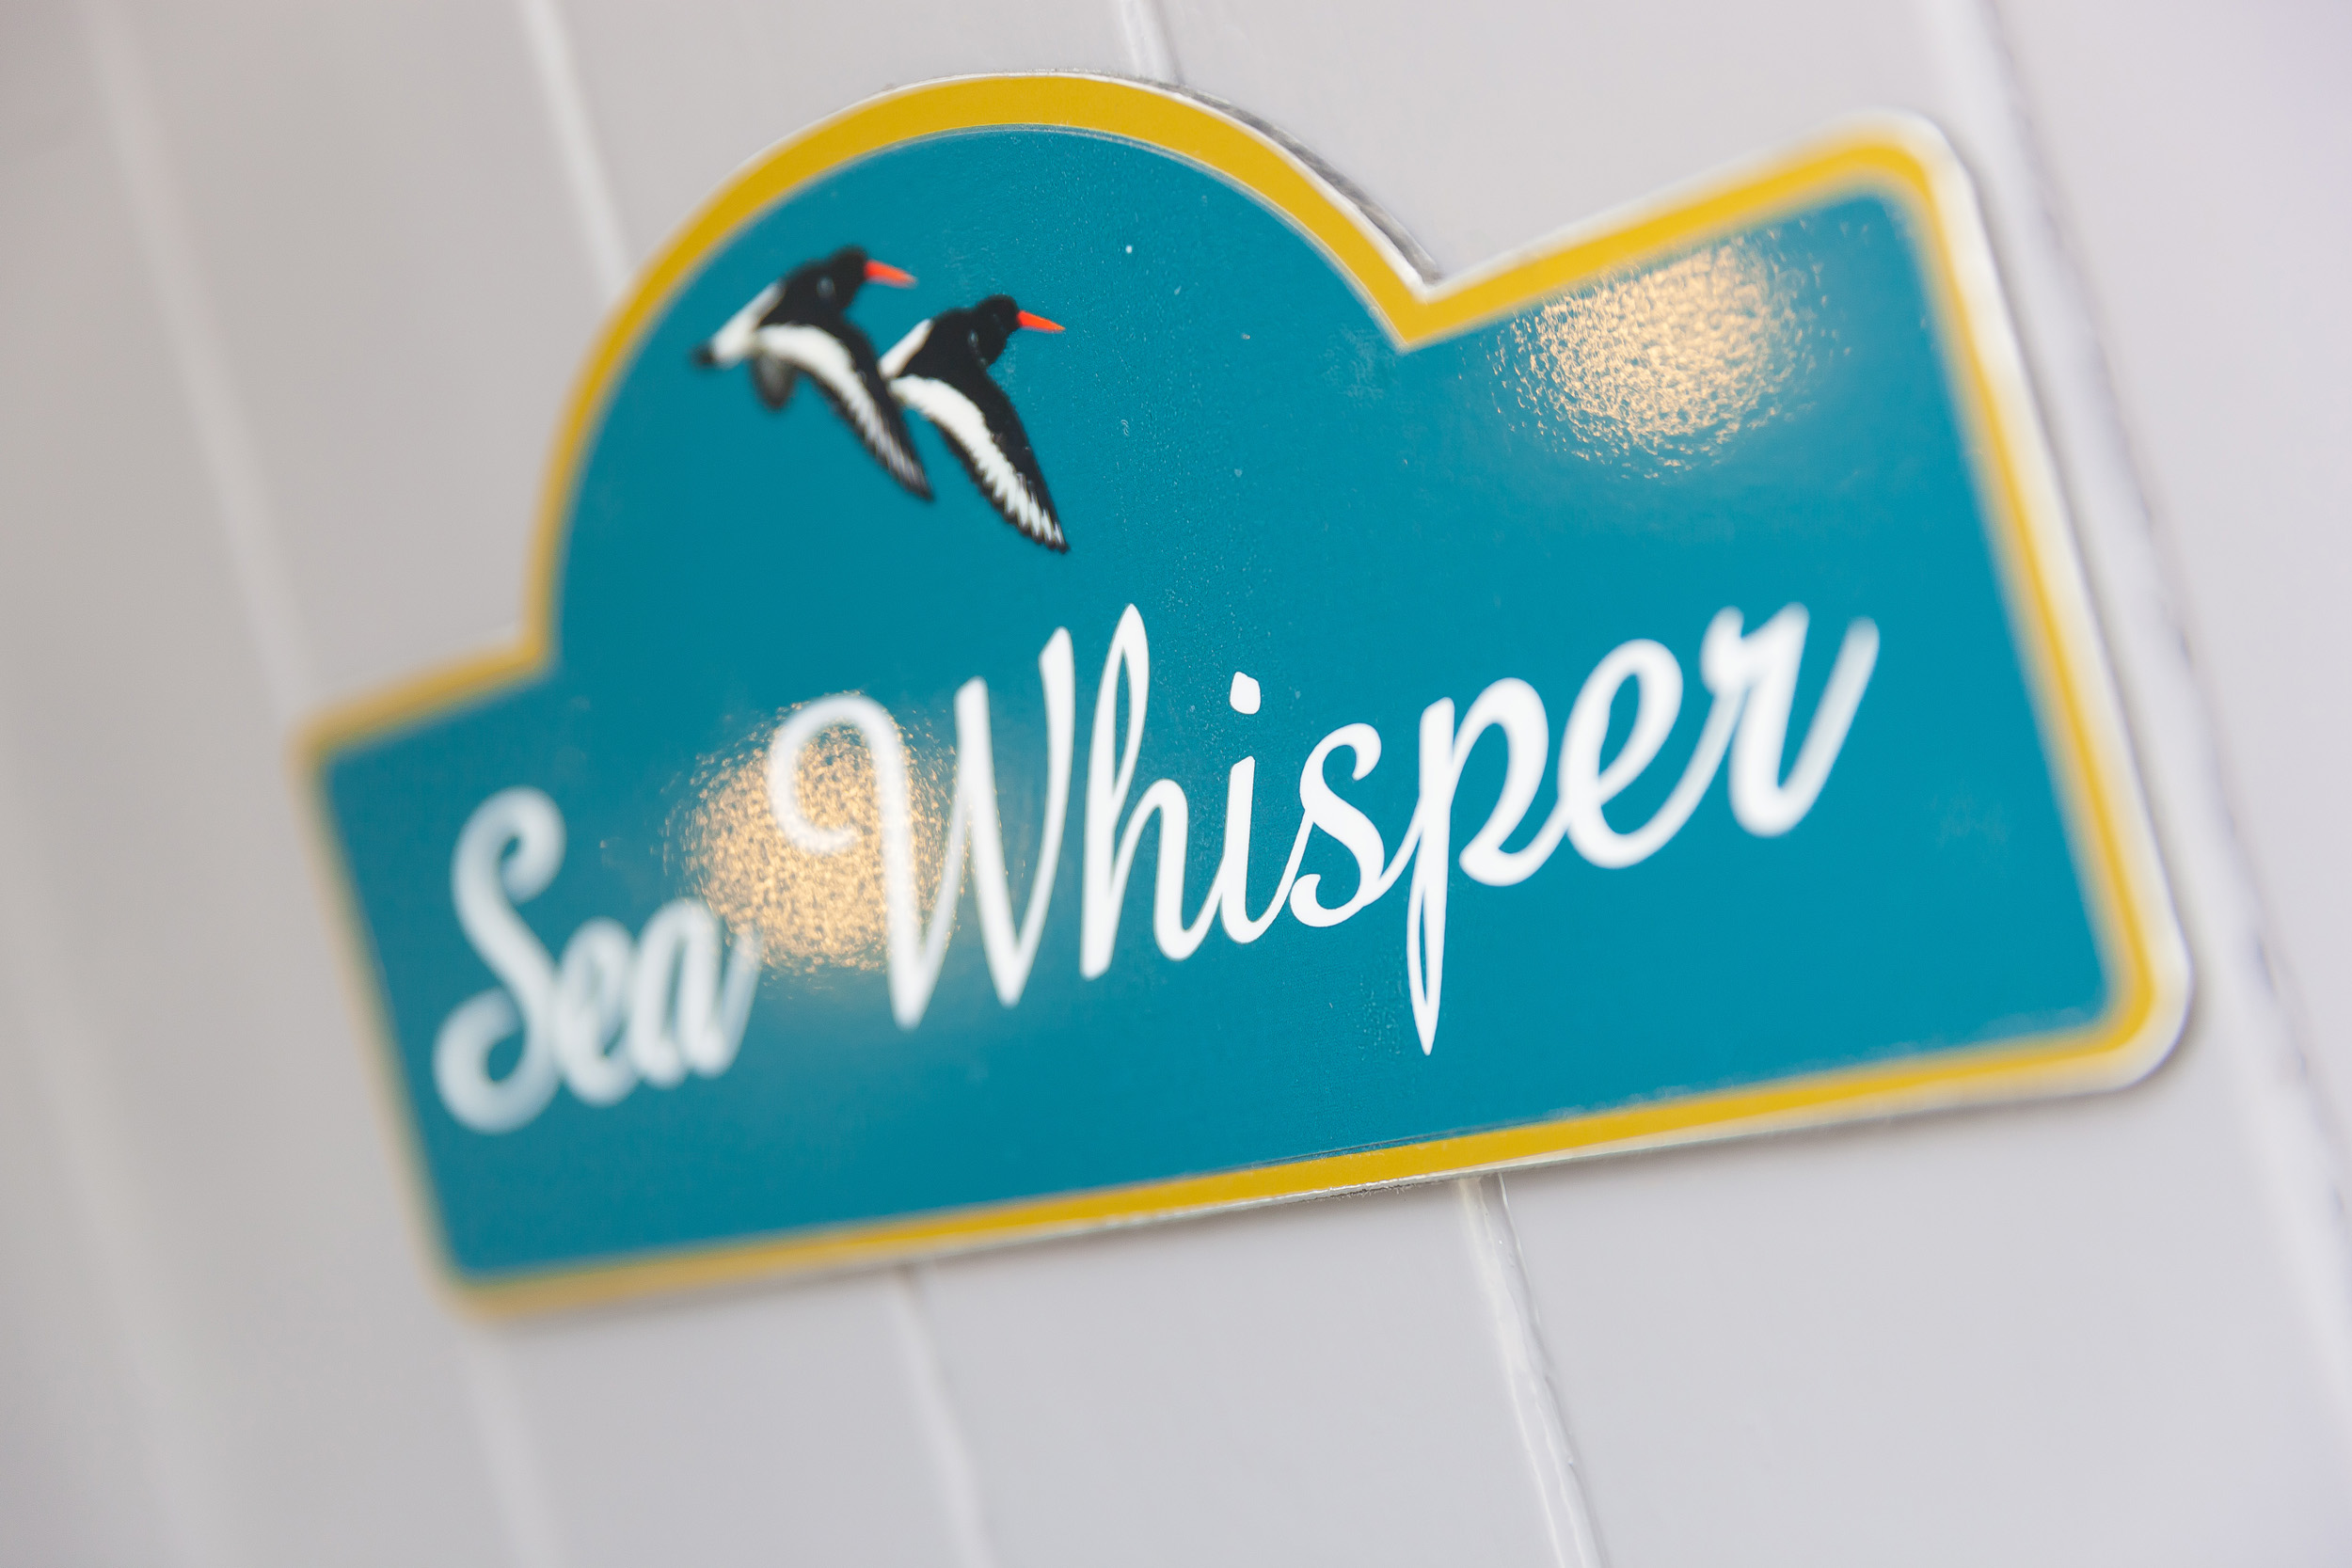 Sea Whisper, Portreath